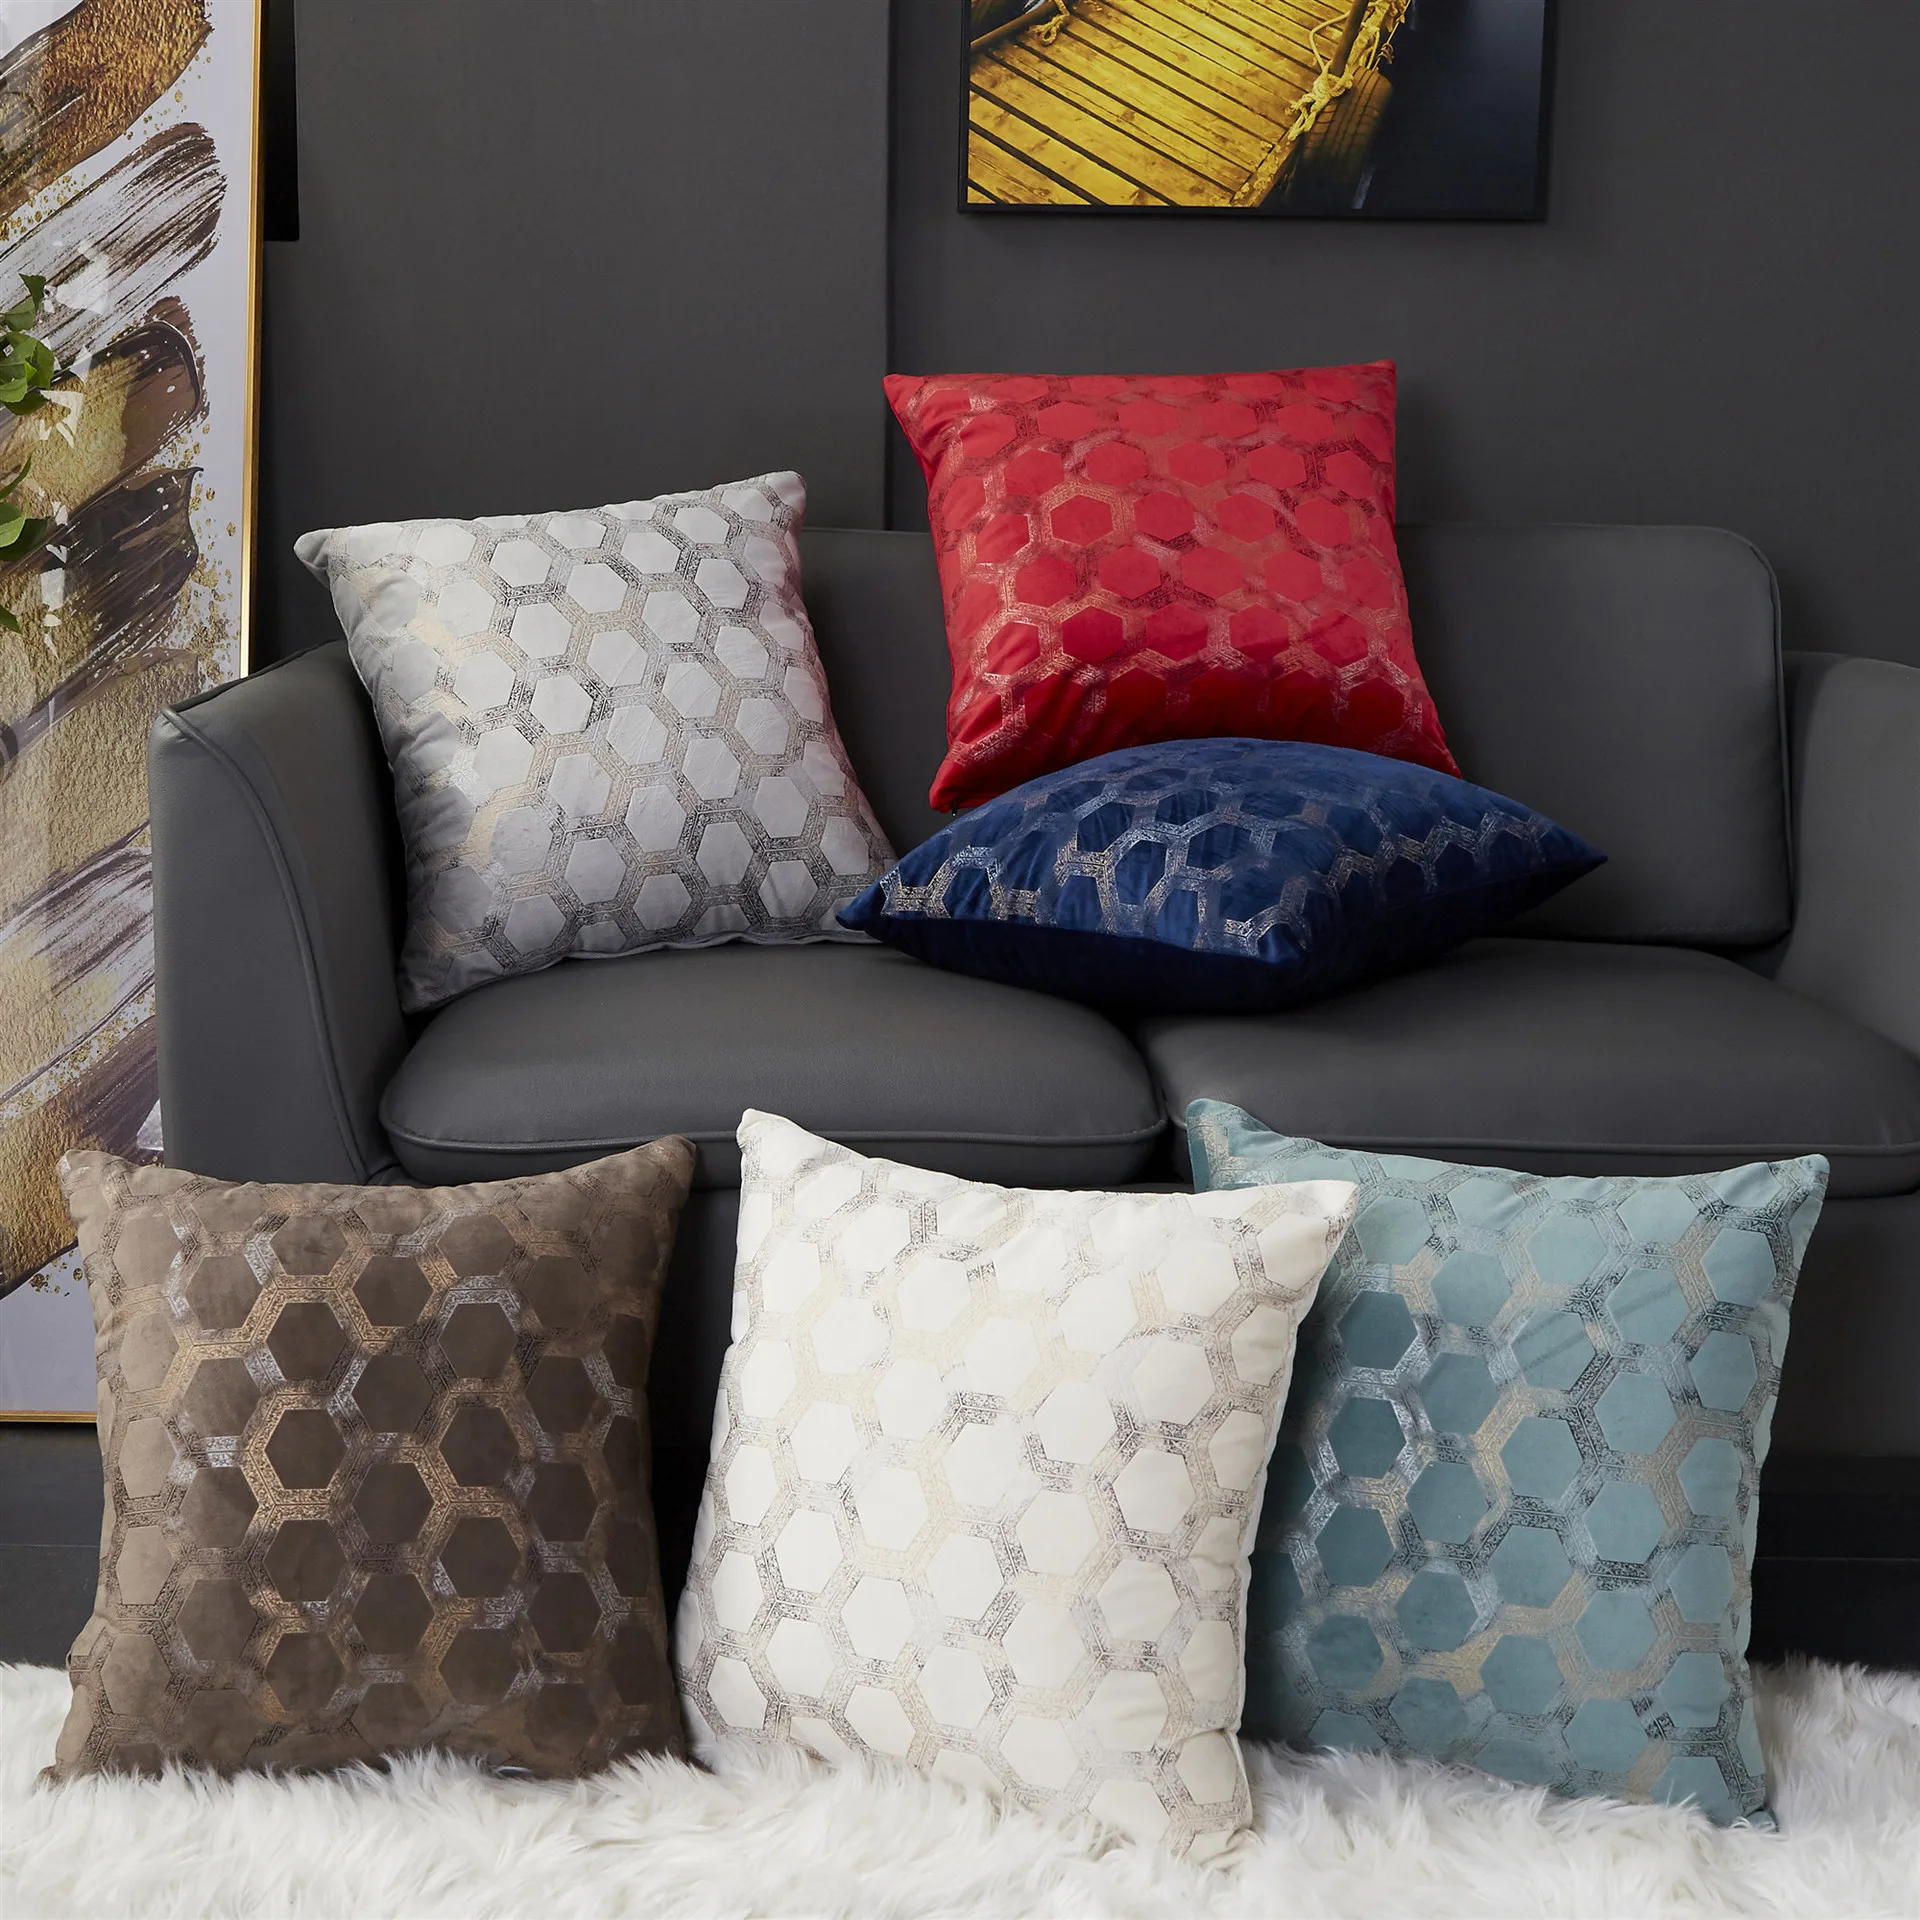 

Мягкий чехол для подушки, цвет слоновой кости, серый, красный, синий, кофейный, геометрический домашний декоративный чехол для дивана 45x45 см